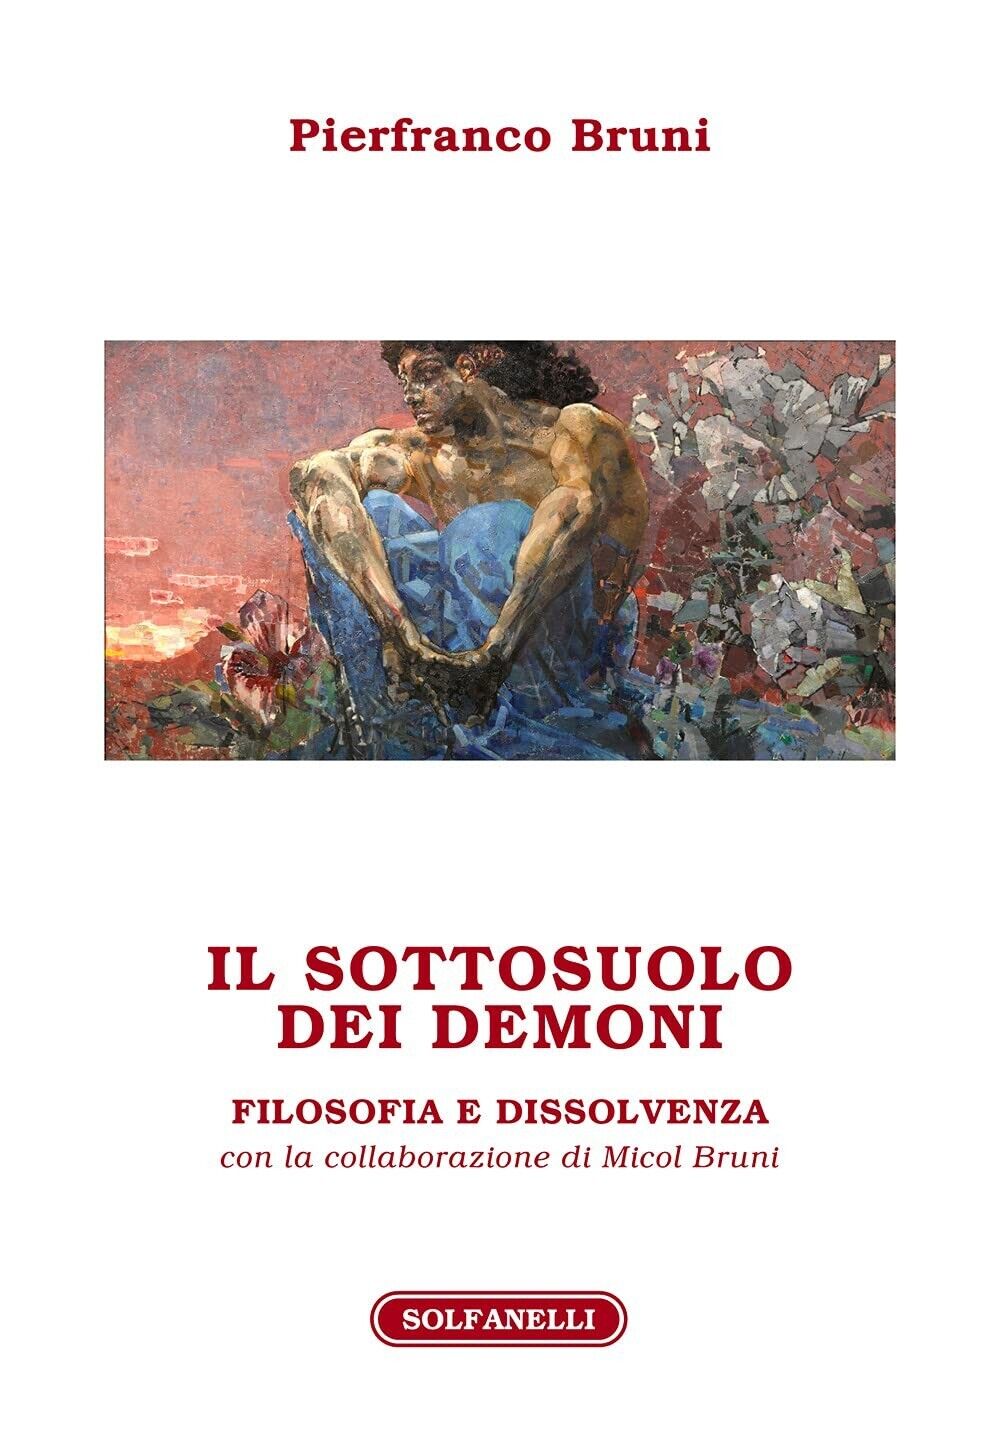 Il sottosuolo dei demoni. Filosofia e dissolvenza di Pierfranco Bruni, 2021,  libro usato